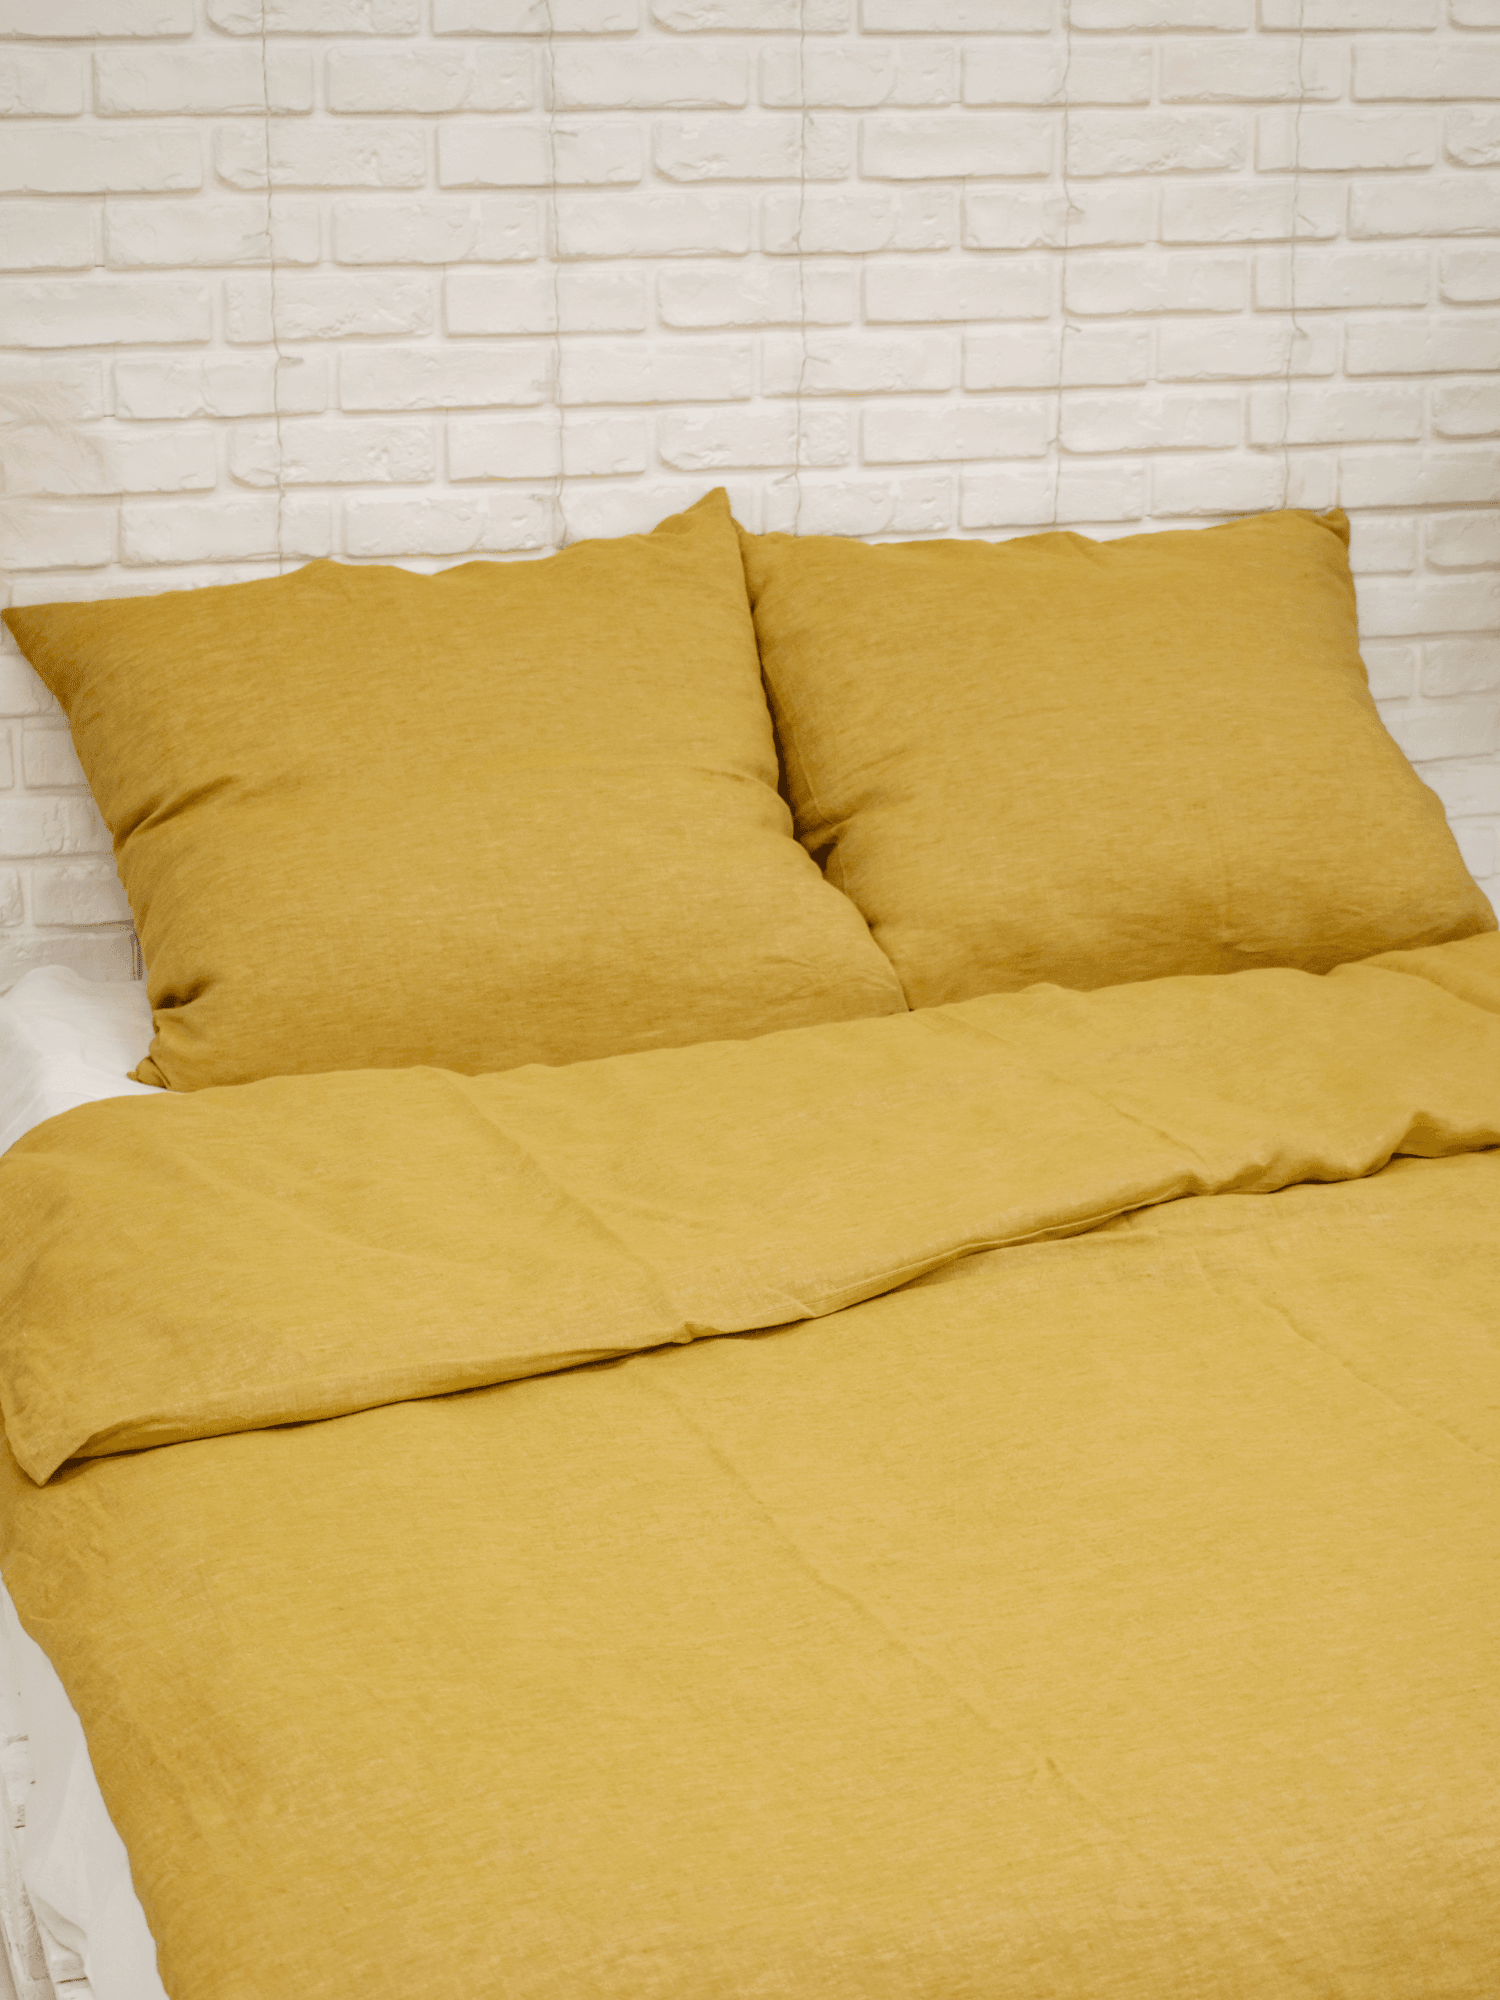 Yellow Soft Linen Pillowcase - Bedroom, label, Linen pillowcase - FlaxLin Eco Textiles